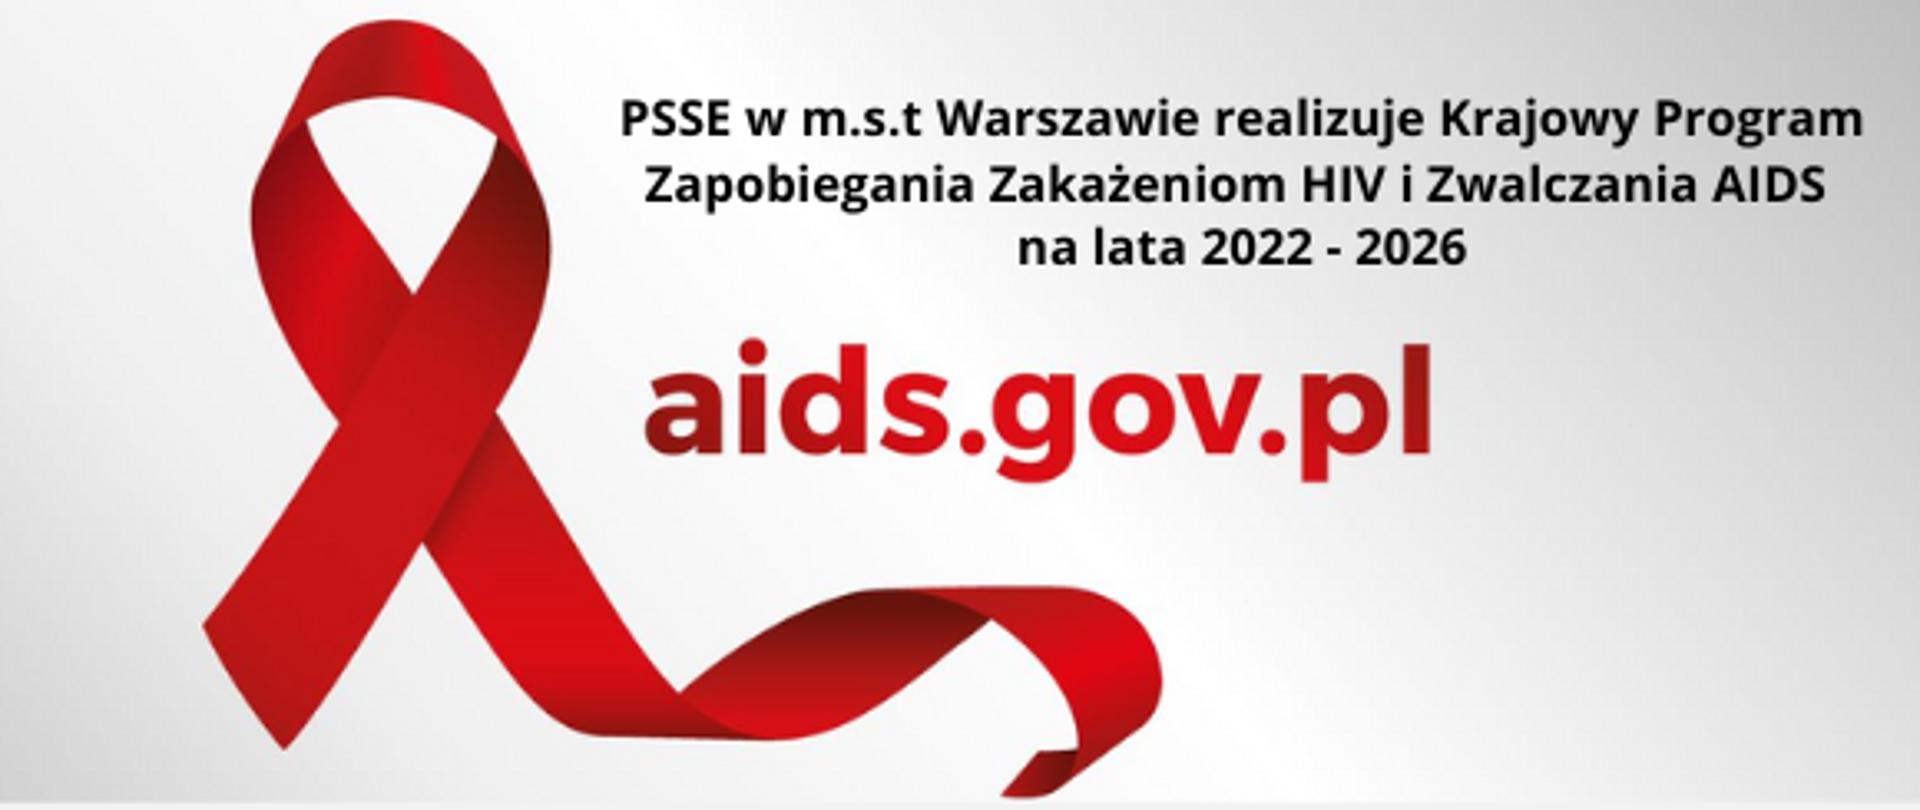 Czerwona wstążeczka po lewej stronie; adres mail do KC ds, Aids oraz informacja że PSSE w m.st. Warszawie realizuje Krajowy Program Zapobiegania Zakażeniom HIV i Zwalczania AIDA na lata 2022-2026